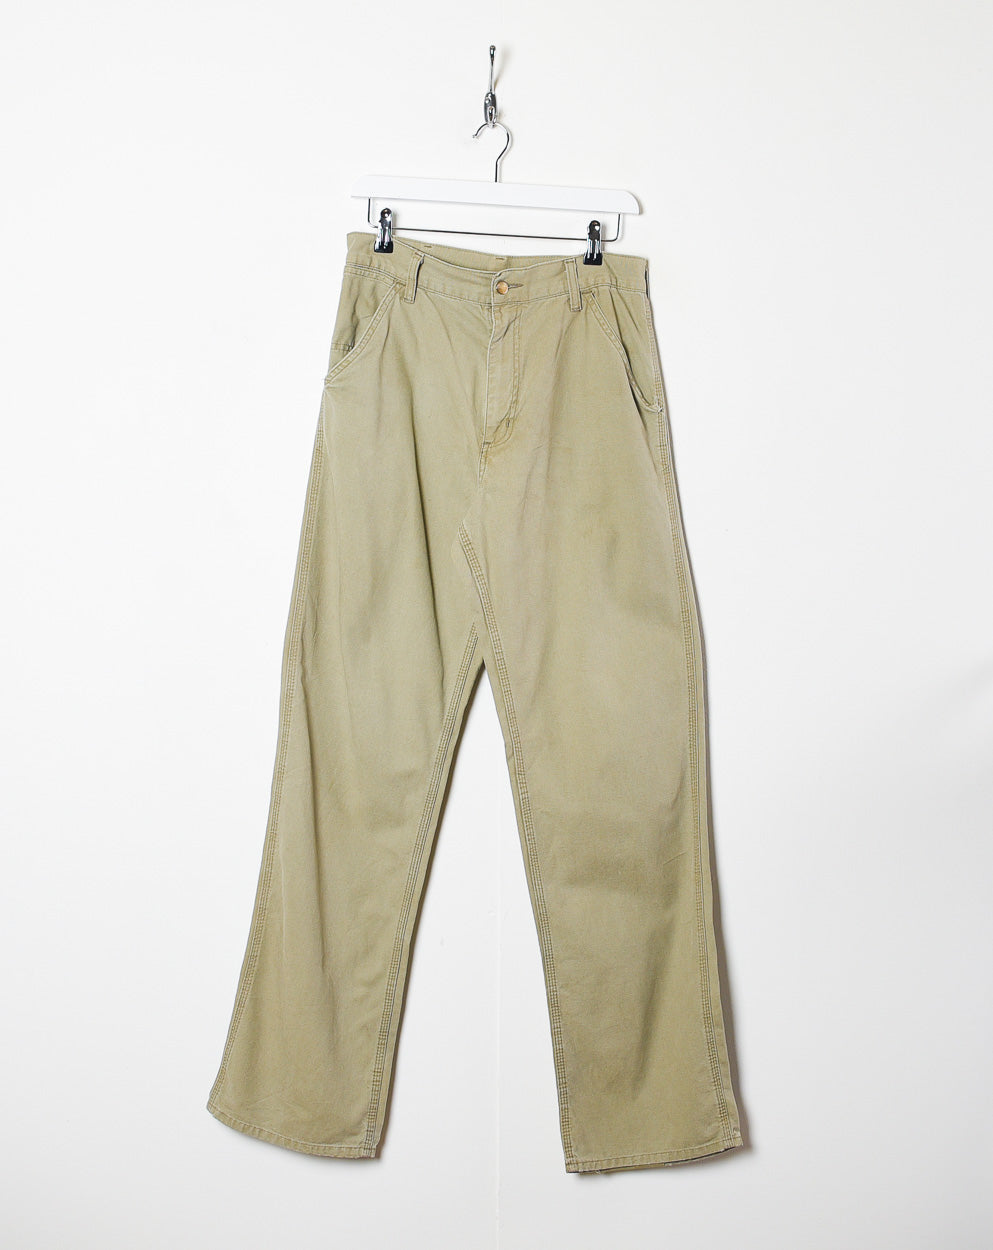 Neutral Carhartt Jeans - W30 L32